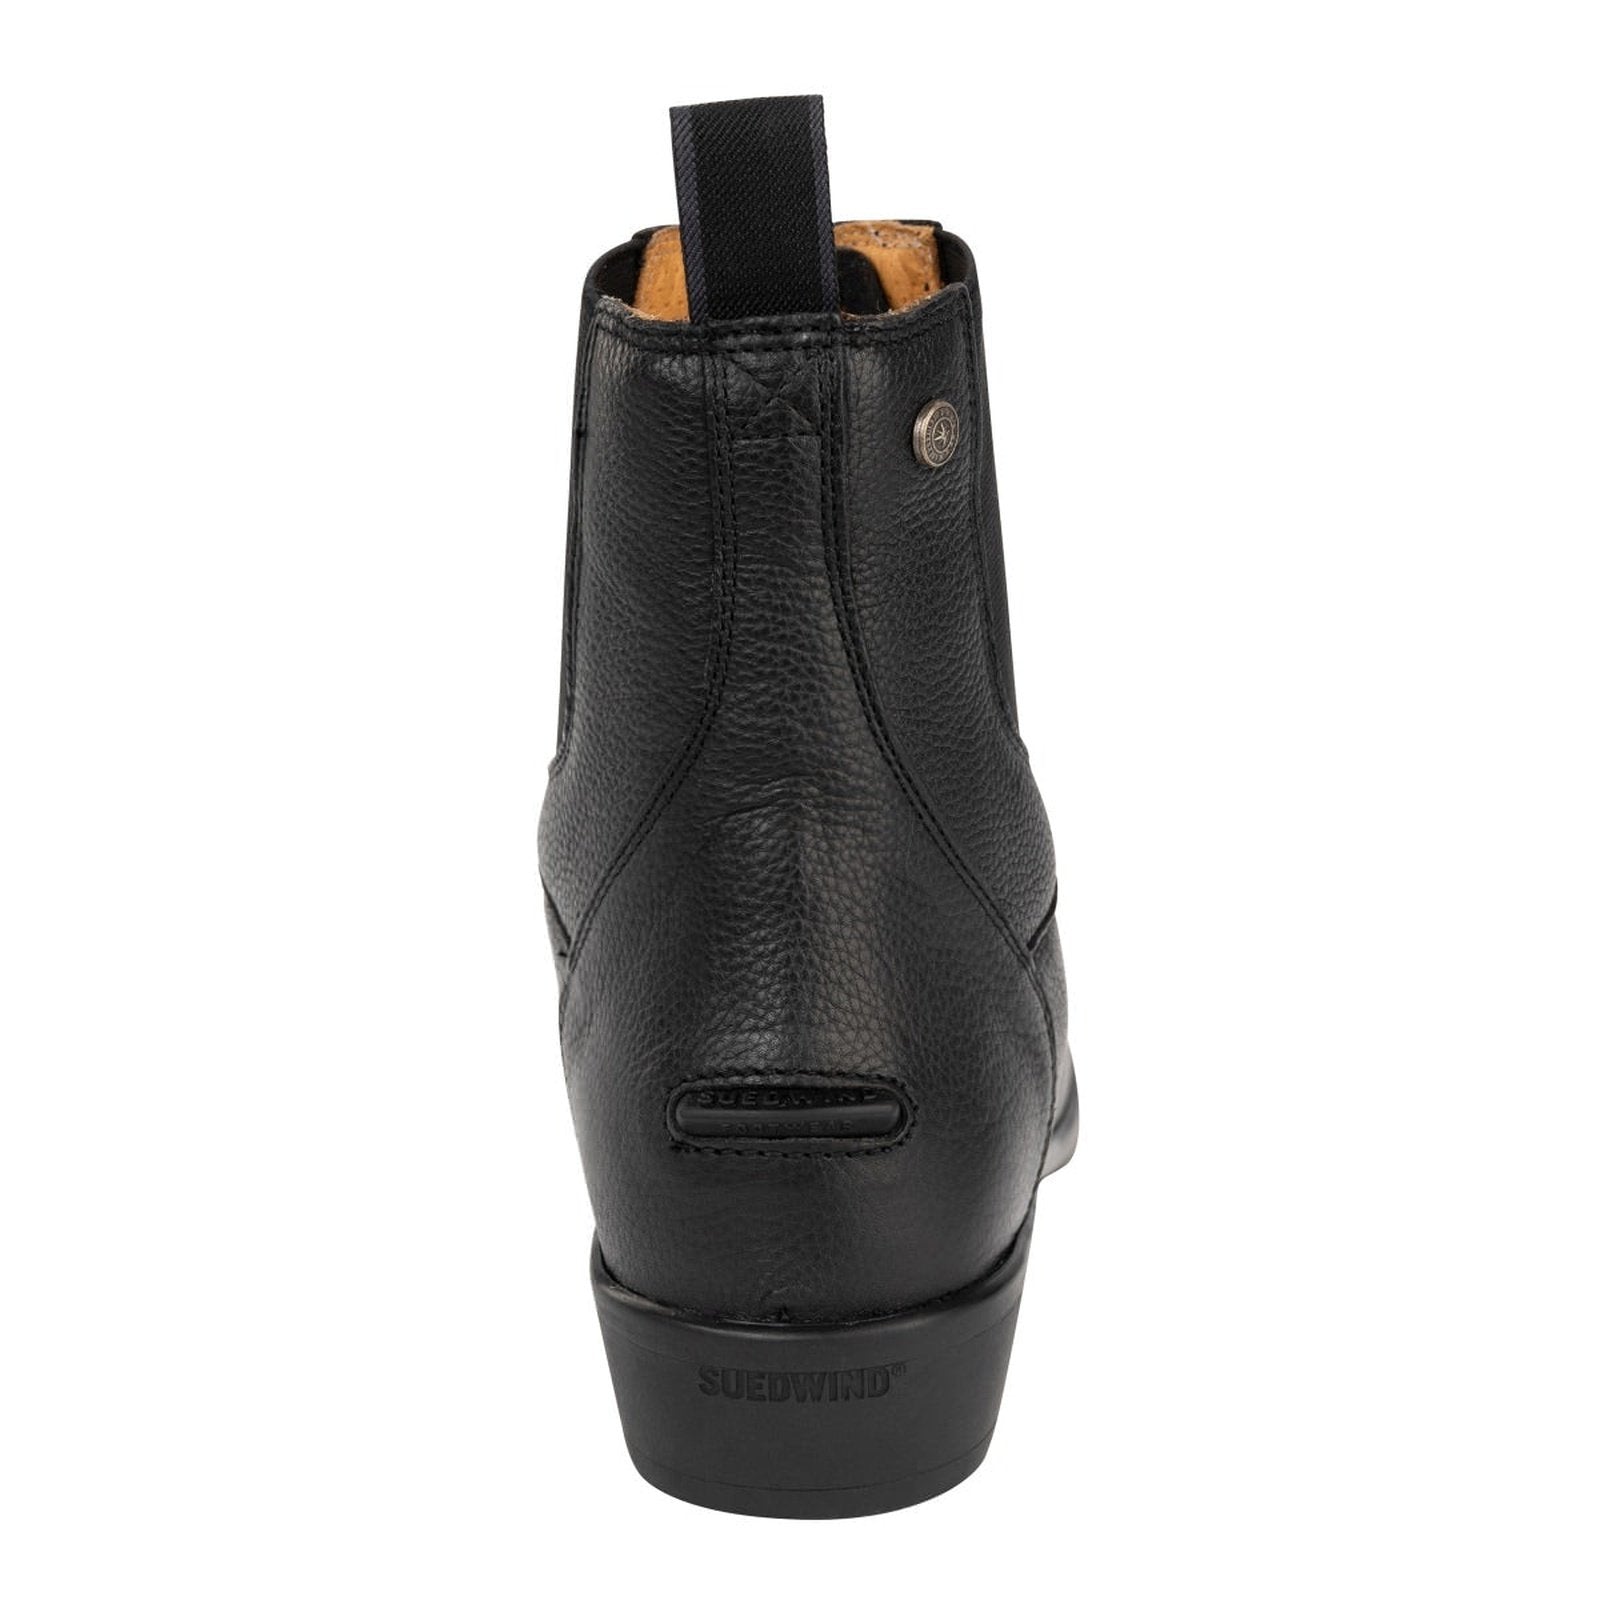 Suedwind Advanced II FZ Soft Leder Stiefelette,mit Reißverschluss vorne, in braun & schwarz, Gr. 36 - 43 Suedwind bei SP-Reitsport